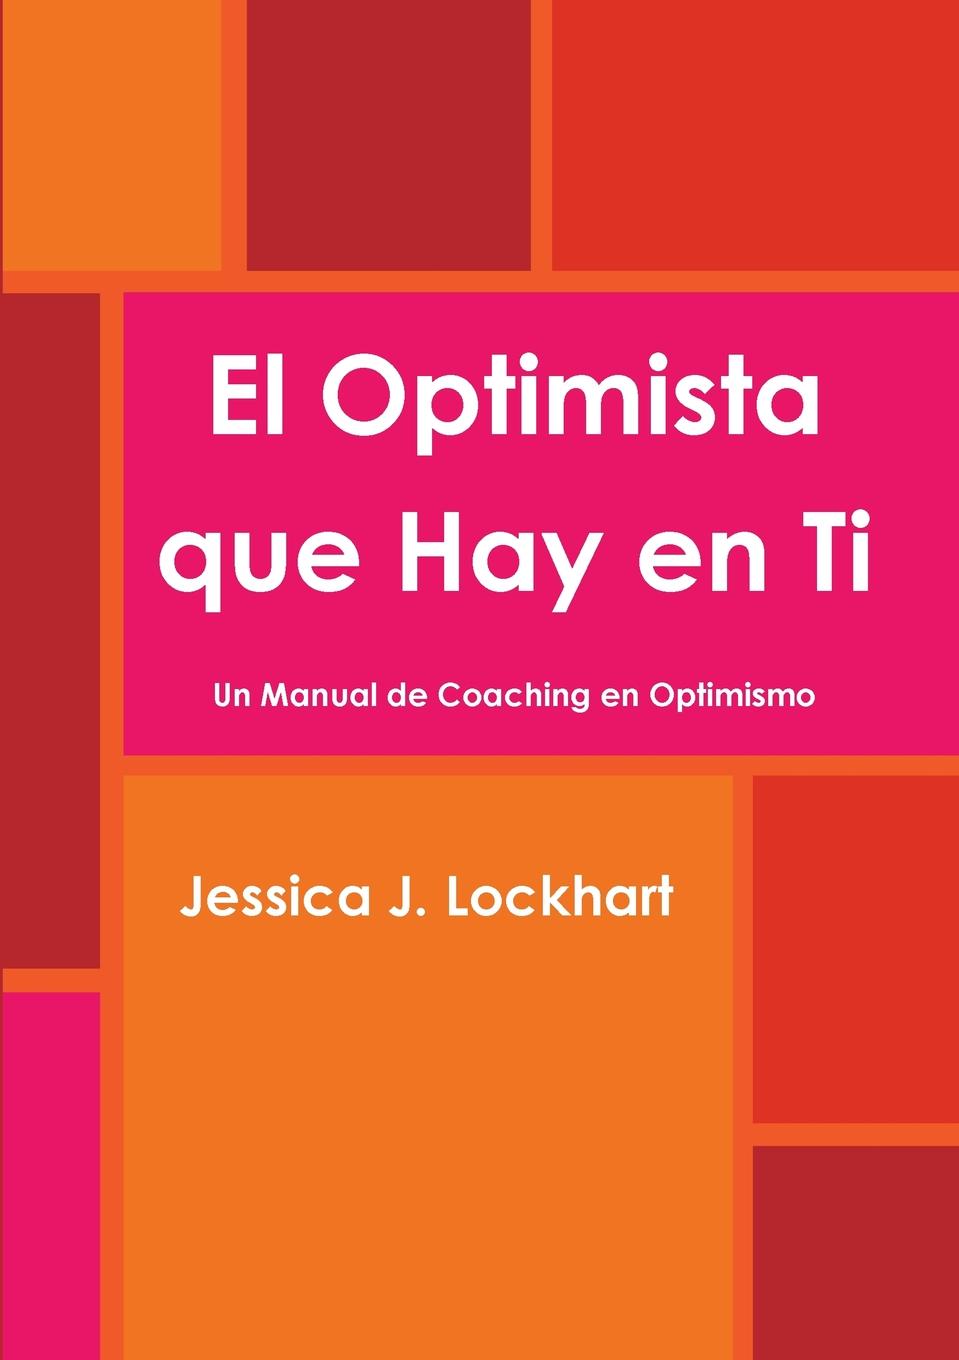 El Optimista que Hay en Ti  -Un Manual de Coaching en Optimismo-